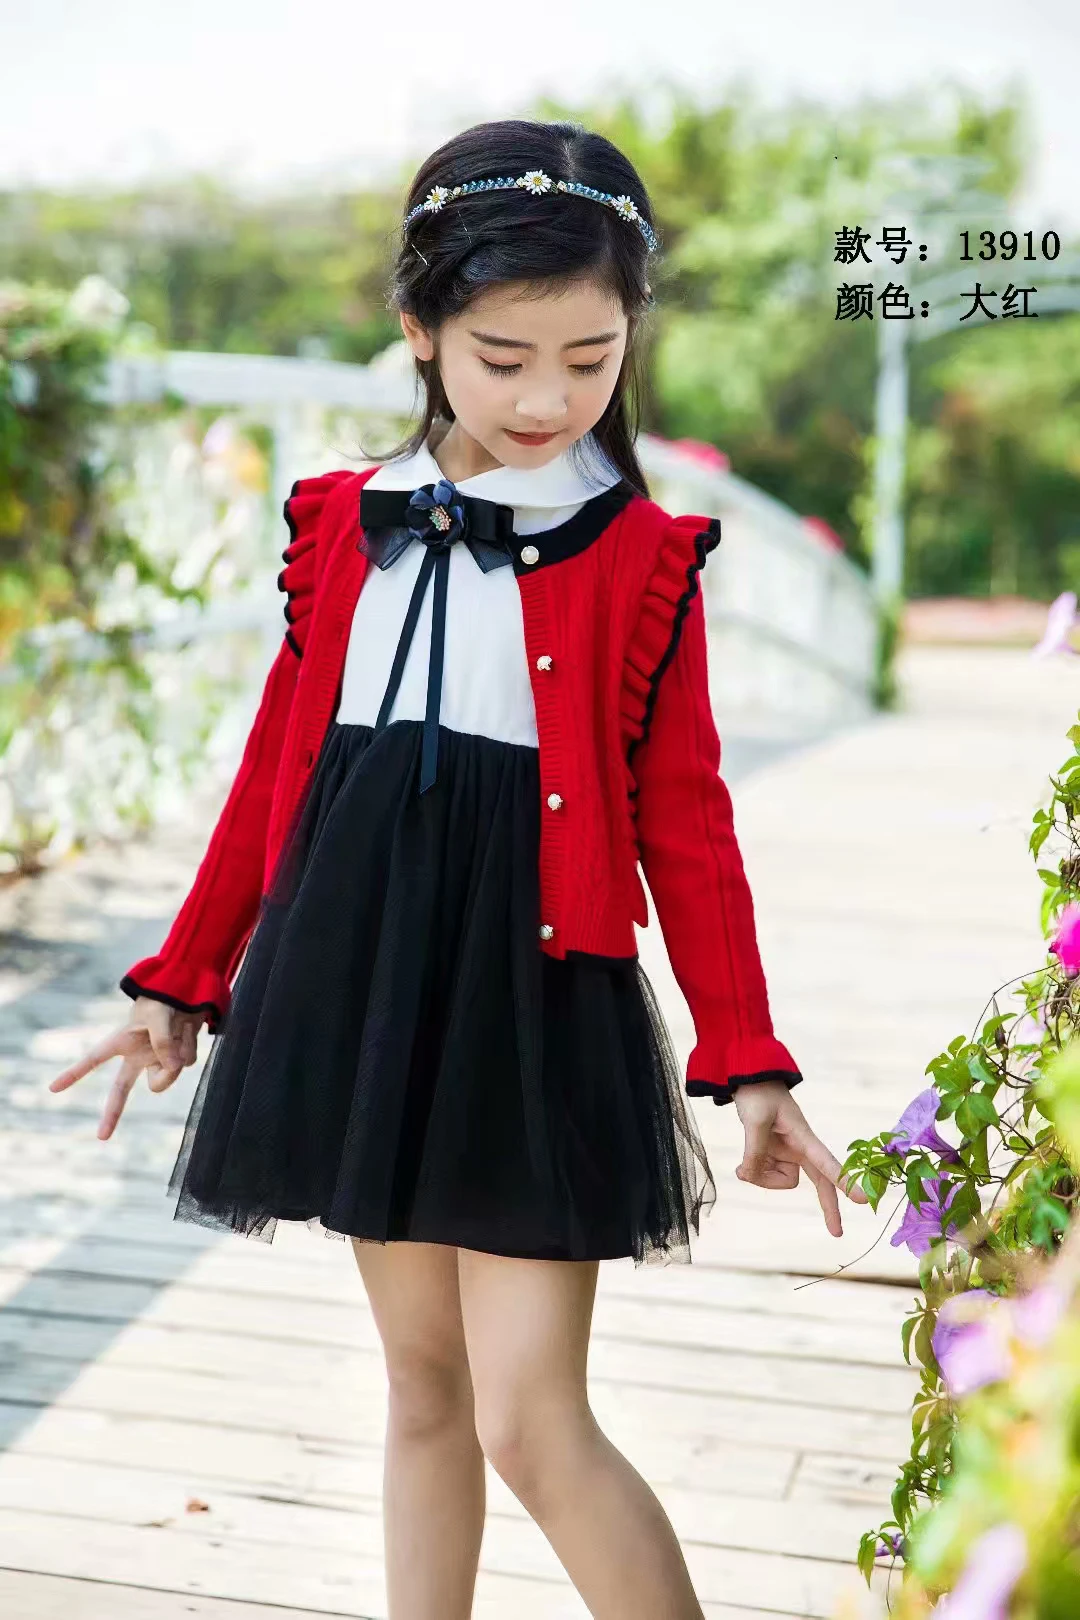 热卖儿童服装韩国和日本风格女孩服装休闲装女孩毛衣